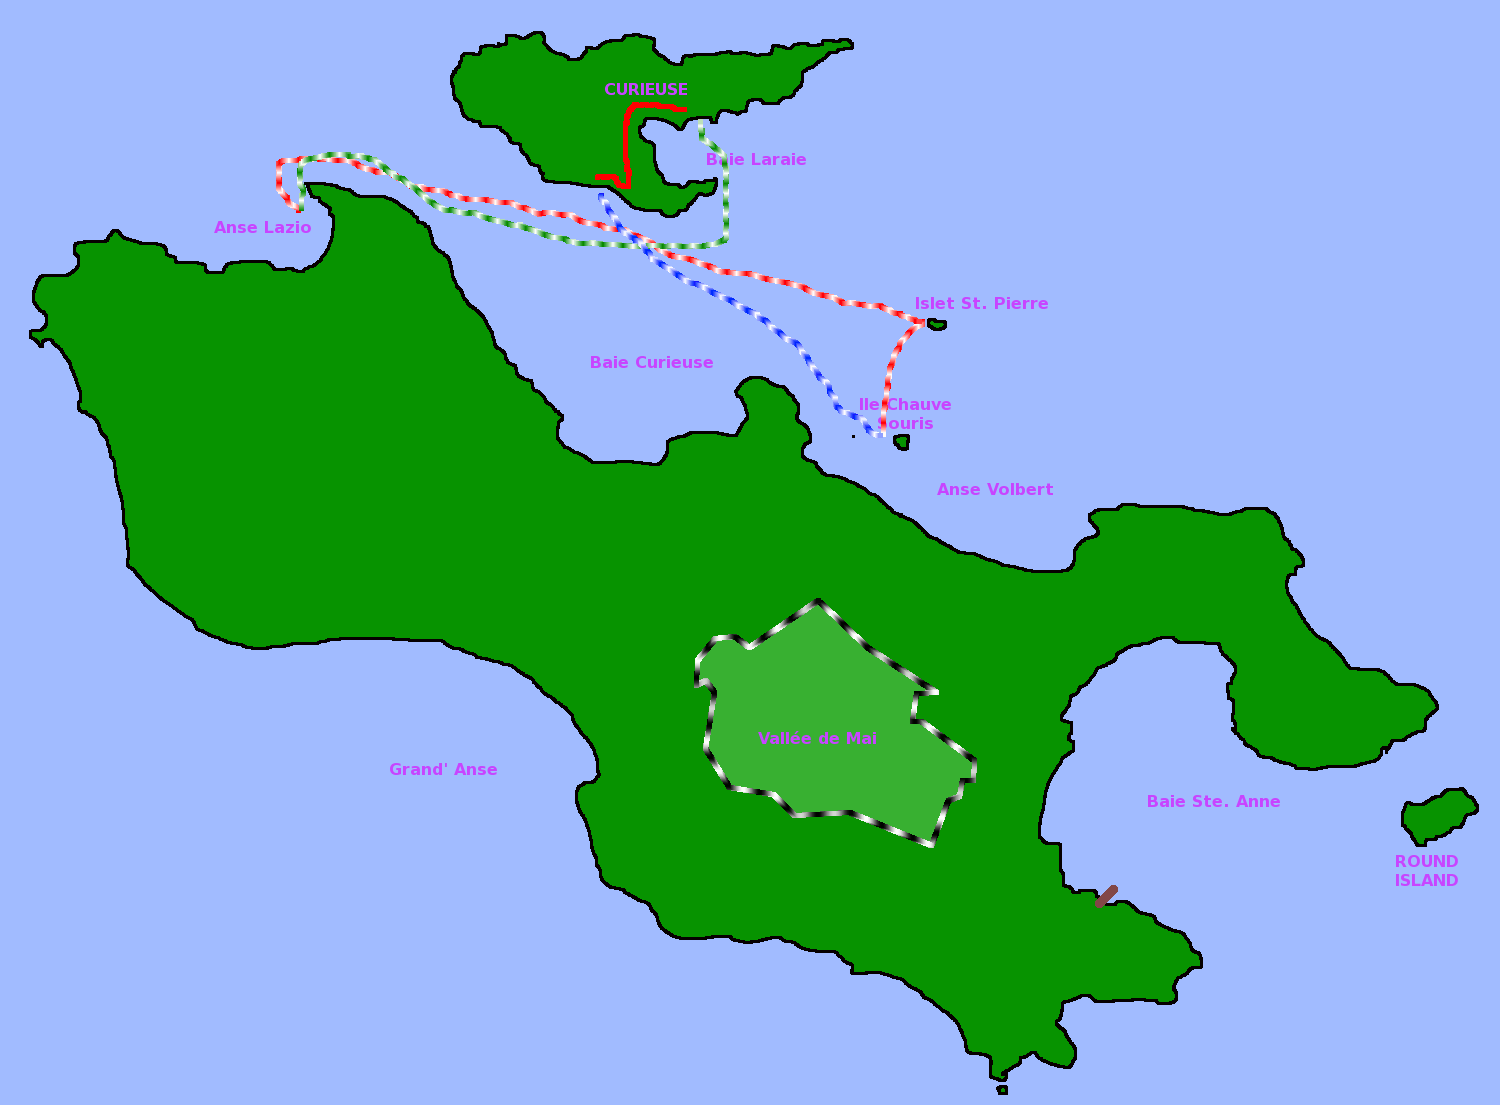 Karte Seychellen mit eingetragener Tour des Curieuse-Ausflugs